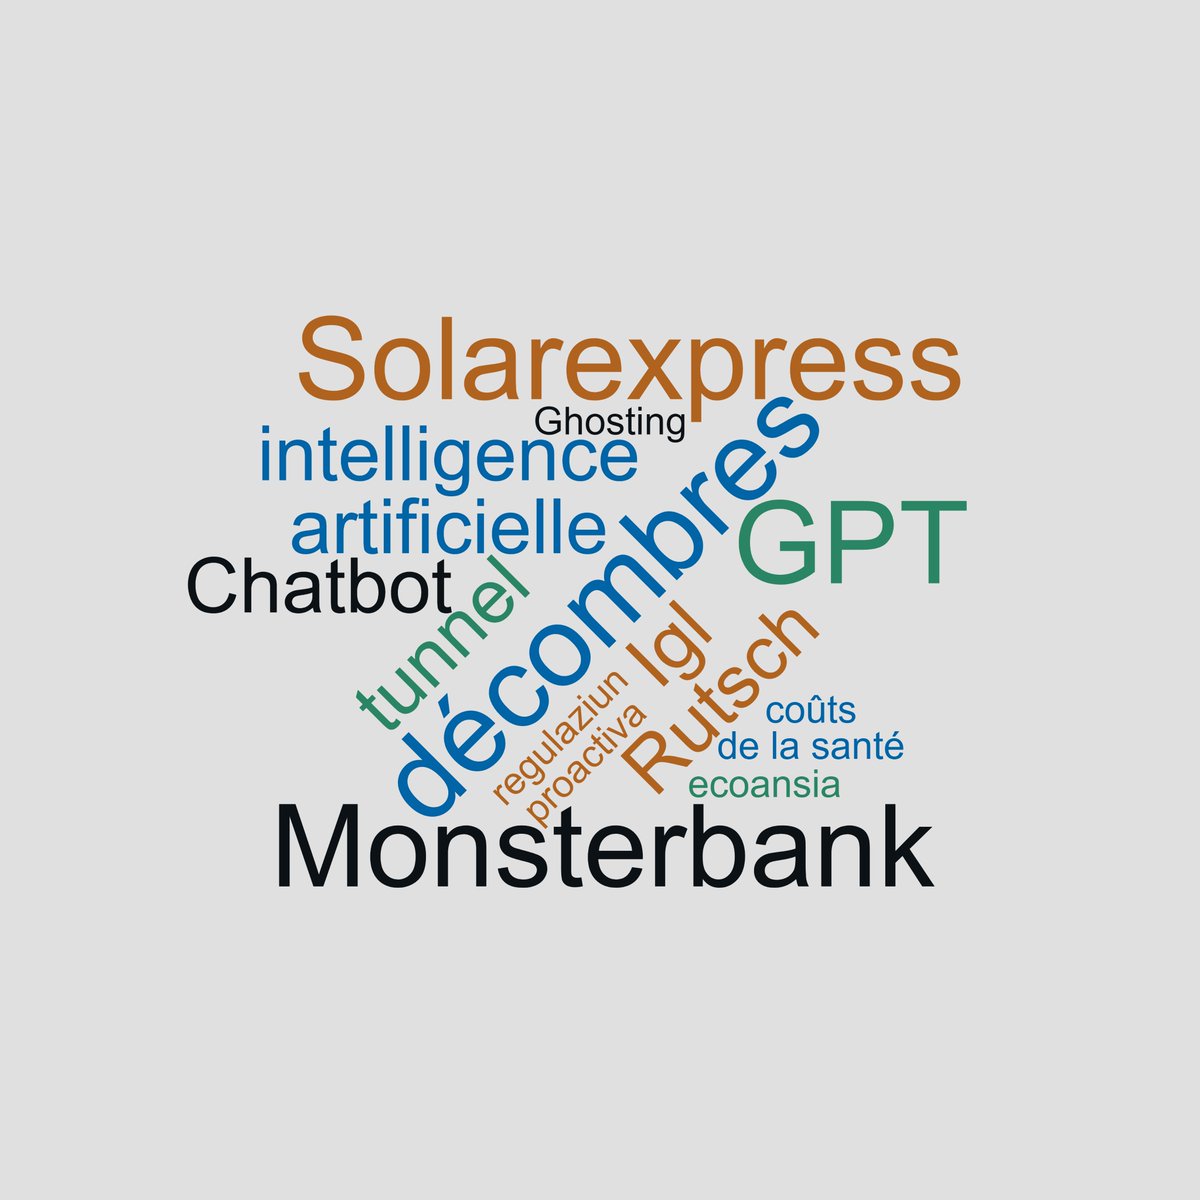 Das Wort des Jahres wurde gewählt! Auf Platz 1 sind Monsterbank, décombres, GPT und Solarexpress - je nach Sprachregion. #WortDesJahresCH #ZHAW zhaw.ch/de/ueber-uns/a…